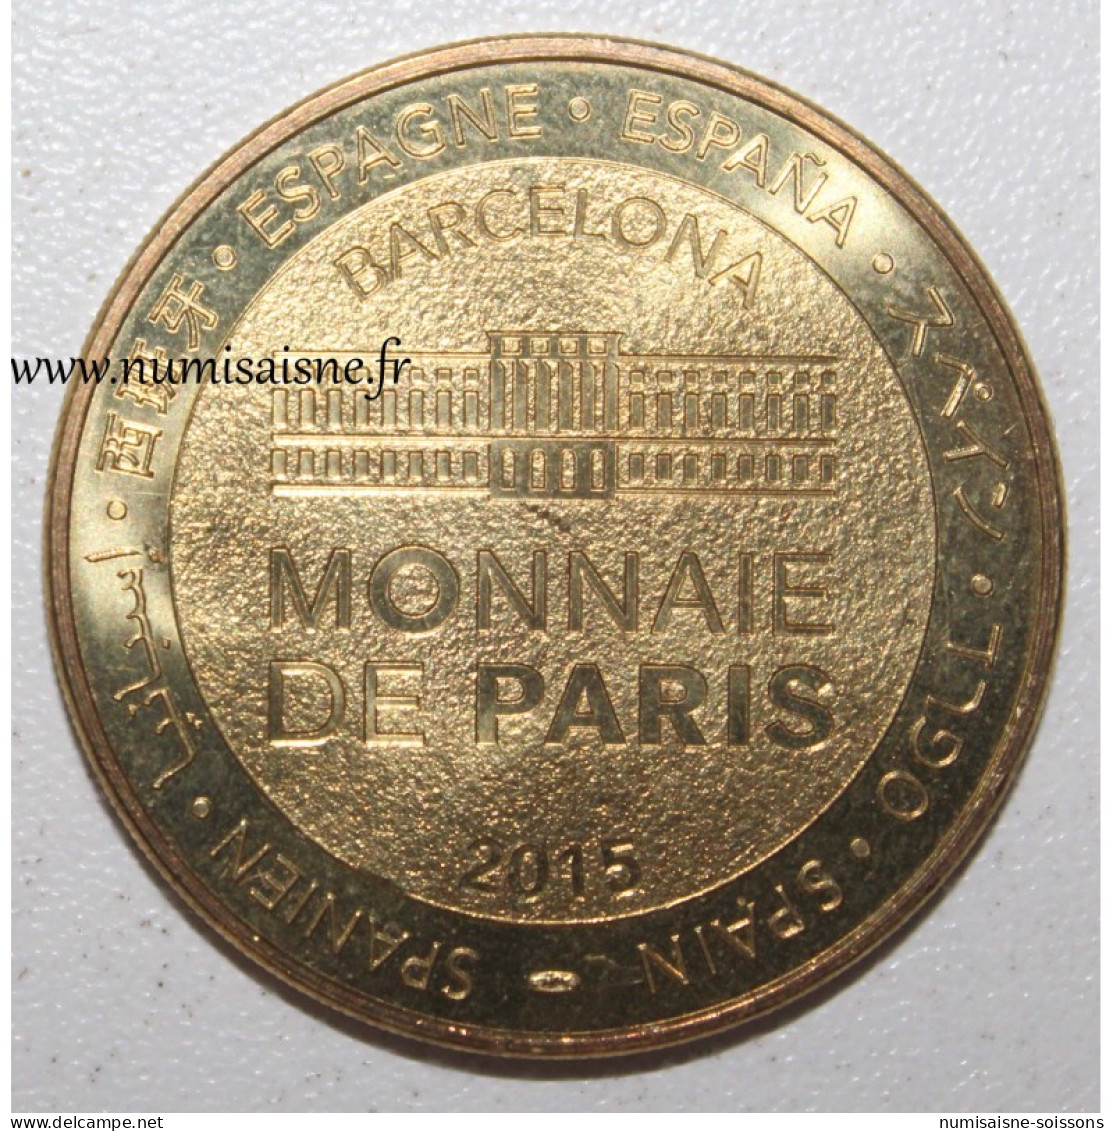 ESPAGNE - BARCELONE - FCB - CAMP NOU - Monnaie De Paris - 2015 - 2015